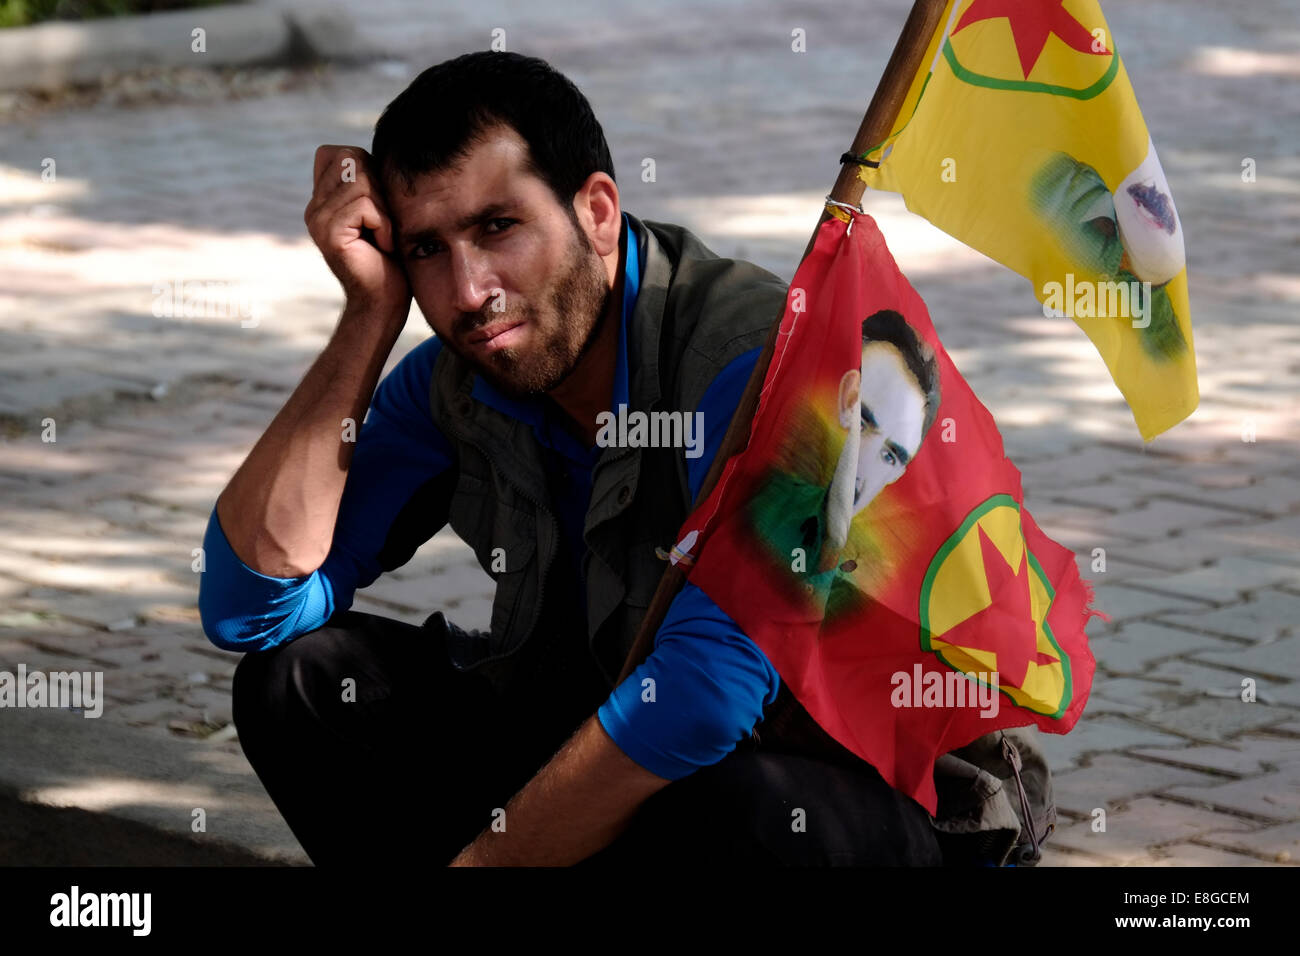 Un homme kurde avec les drapeaux portant la figure d'Abdullah Ocalan, membre fondateur de l'organisation militante du Parti des Travailleurs du Kurdistan (PKK) au cours d'une protestation Kudish à l'appui de Kurdes syriens souffrant d'ISIS les attaques dans la ville syrienne de Kobane.dans la ville kurde d'Erbil dans le Nord de l'Irak Banque D'Images